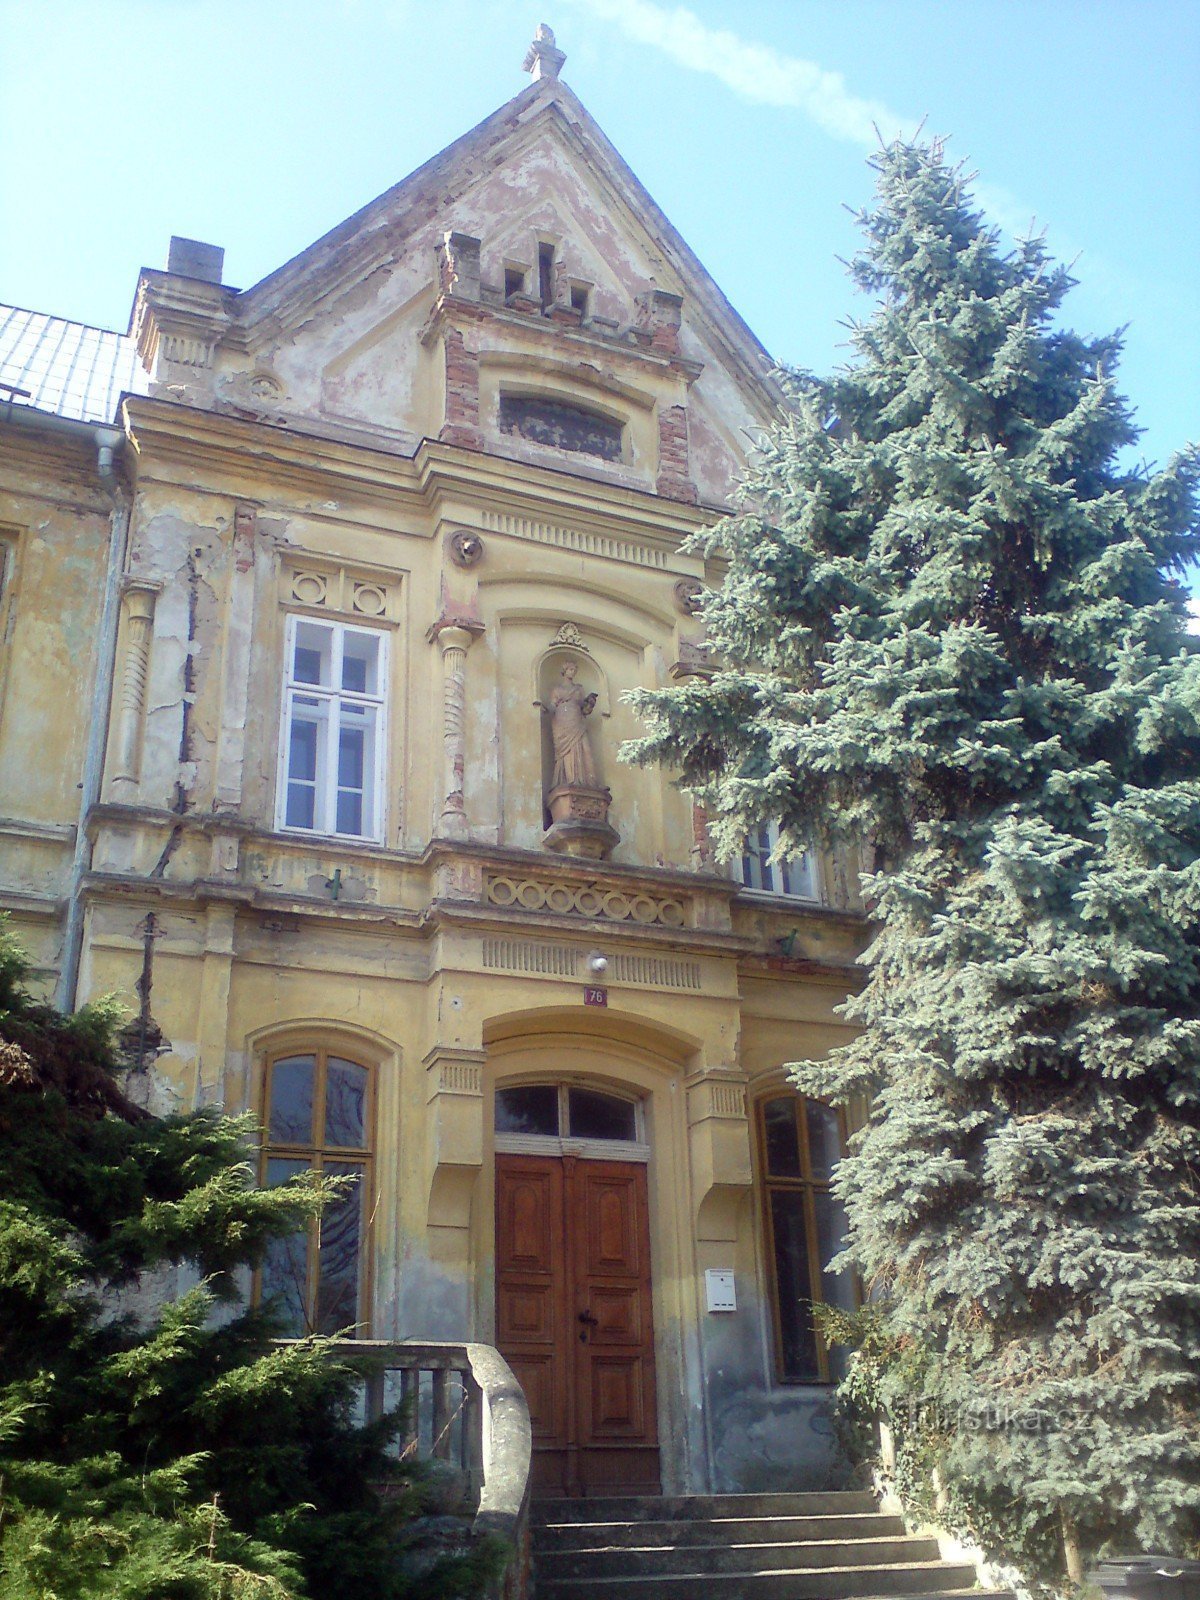 de voorkant en de hoofdingang van het schoolgebouw - een zilveren spar aan de rechterkant siert de trap, nee